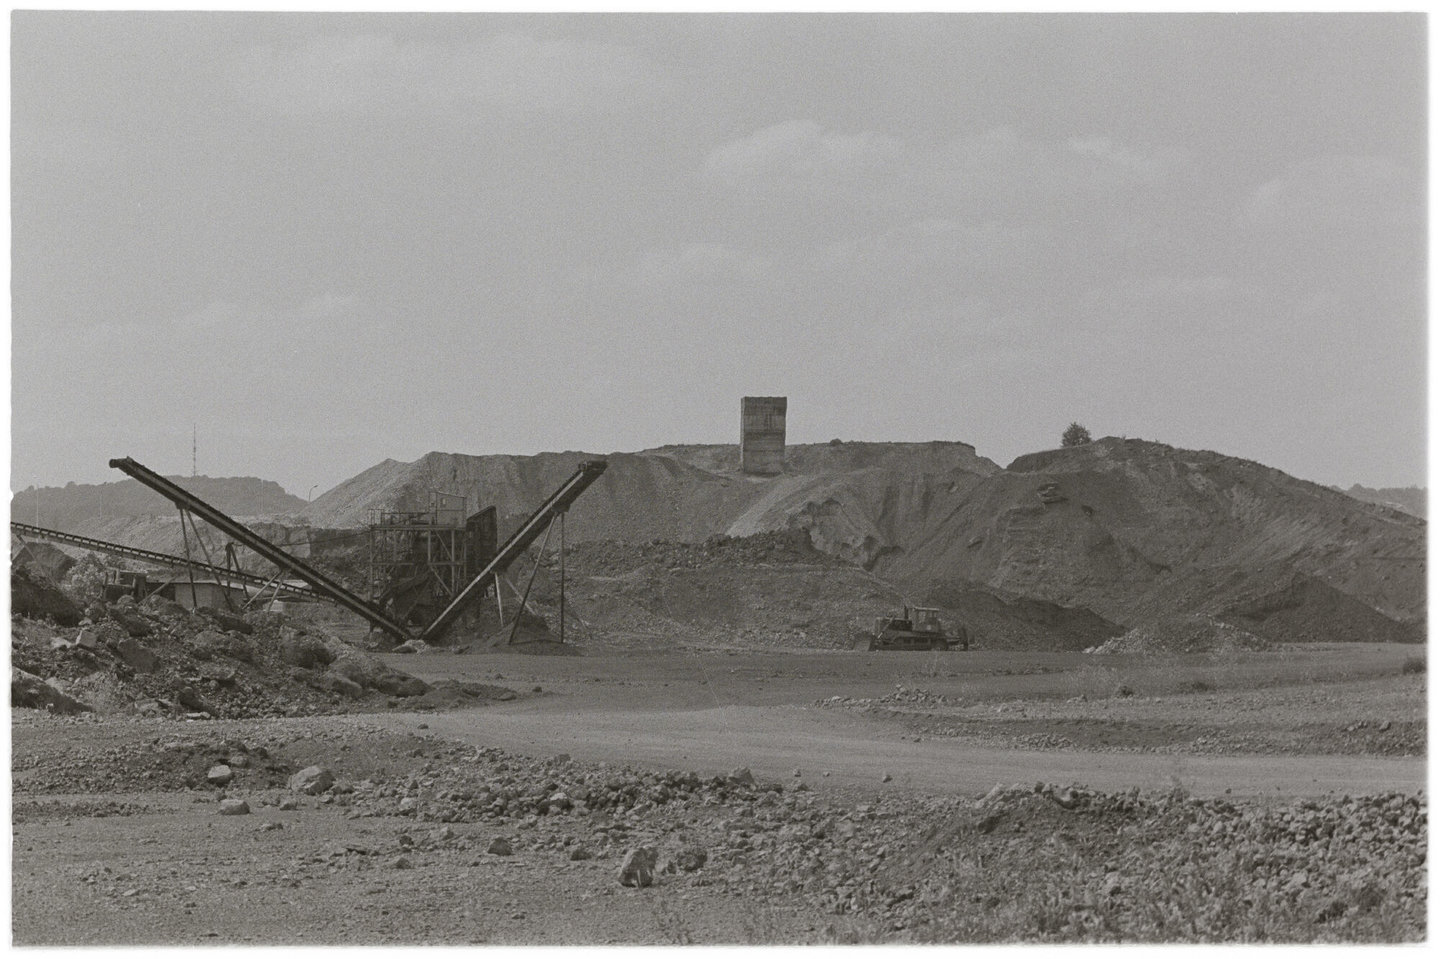 Staalfabriek Minière et Métallurgique de Rodange-Athus in Athus